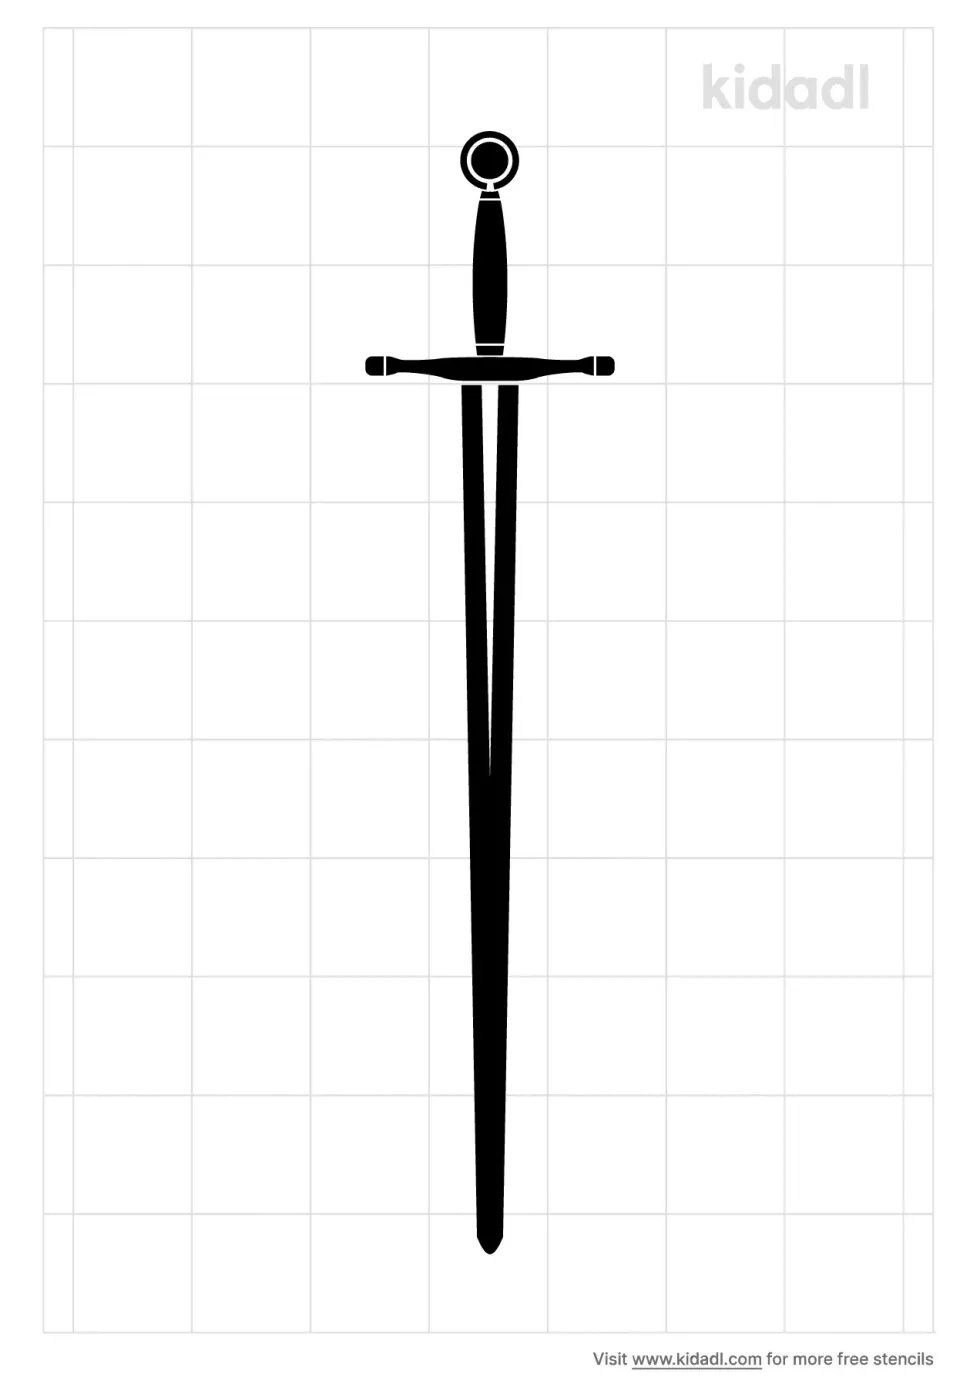 Excalibur Sword